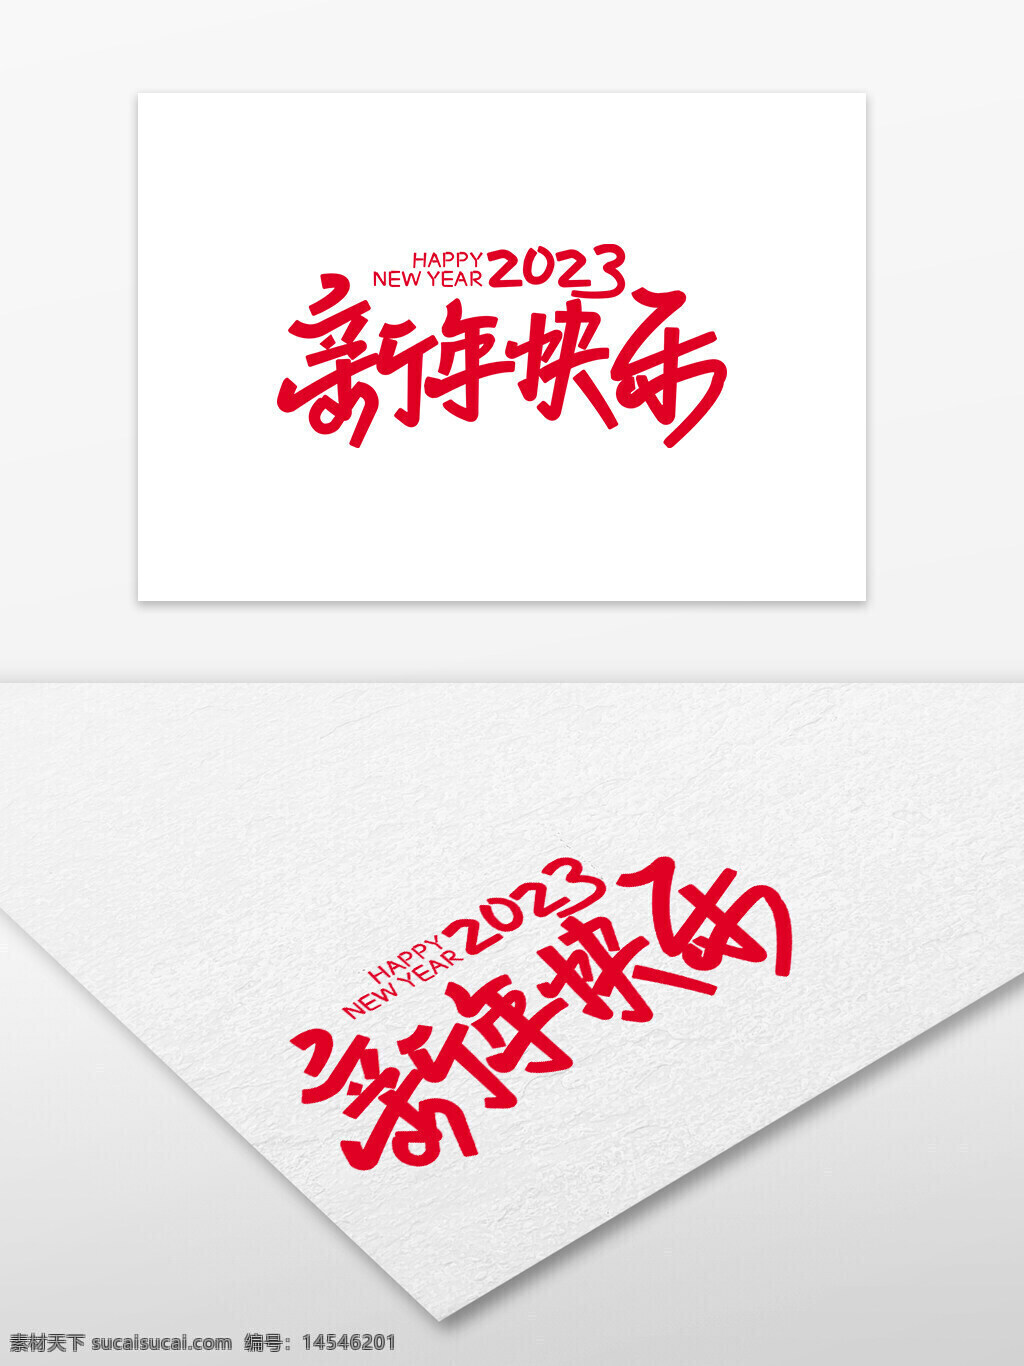 新年快乐2023 新年快乐 2023 新年 新年字体 毛笔字